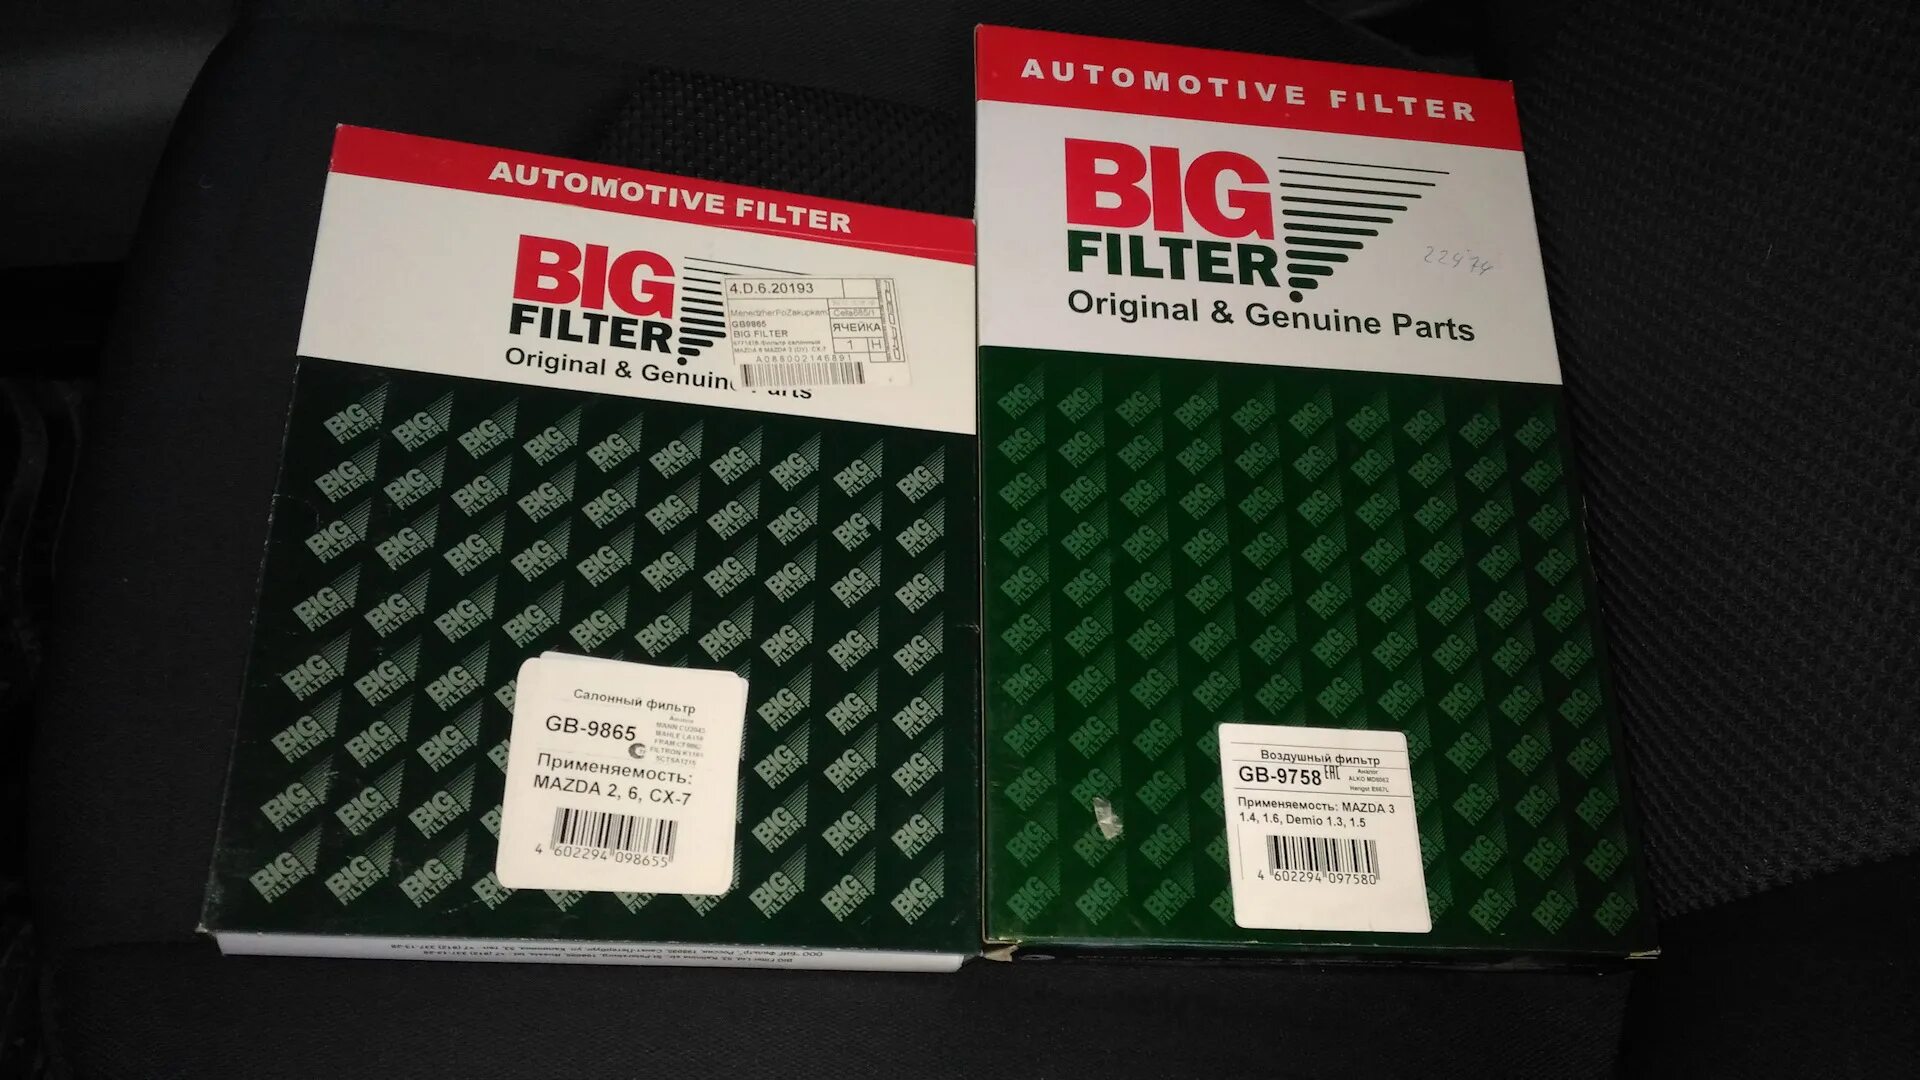 Салонный фильтр big Filter GB-98008. Фильтр big Filter gb934. Масляный фильтр GB-1433 big Filter. Салонный фильтр big Filter GB-9868. Купить фильтры биг